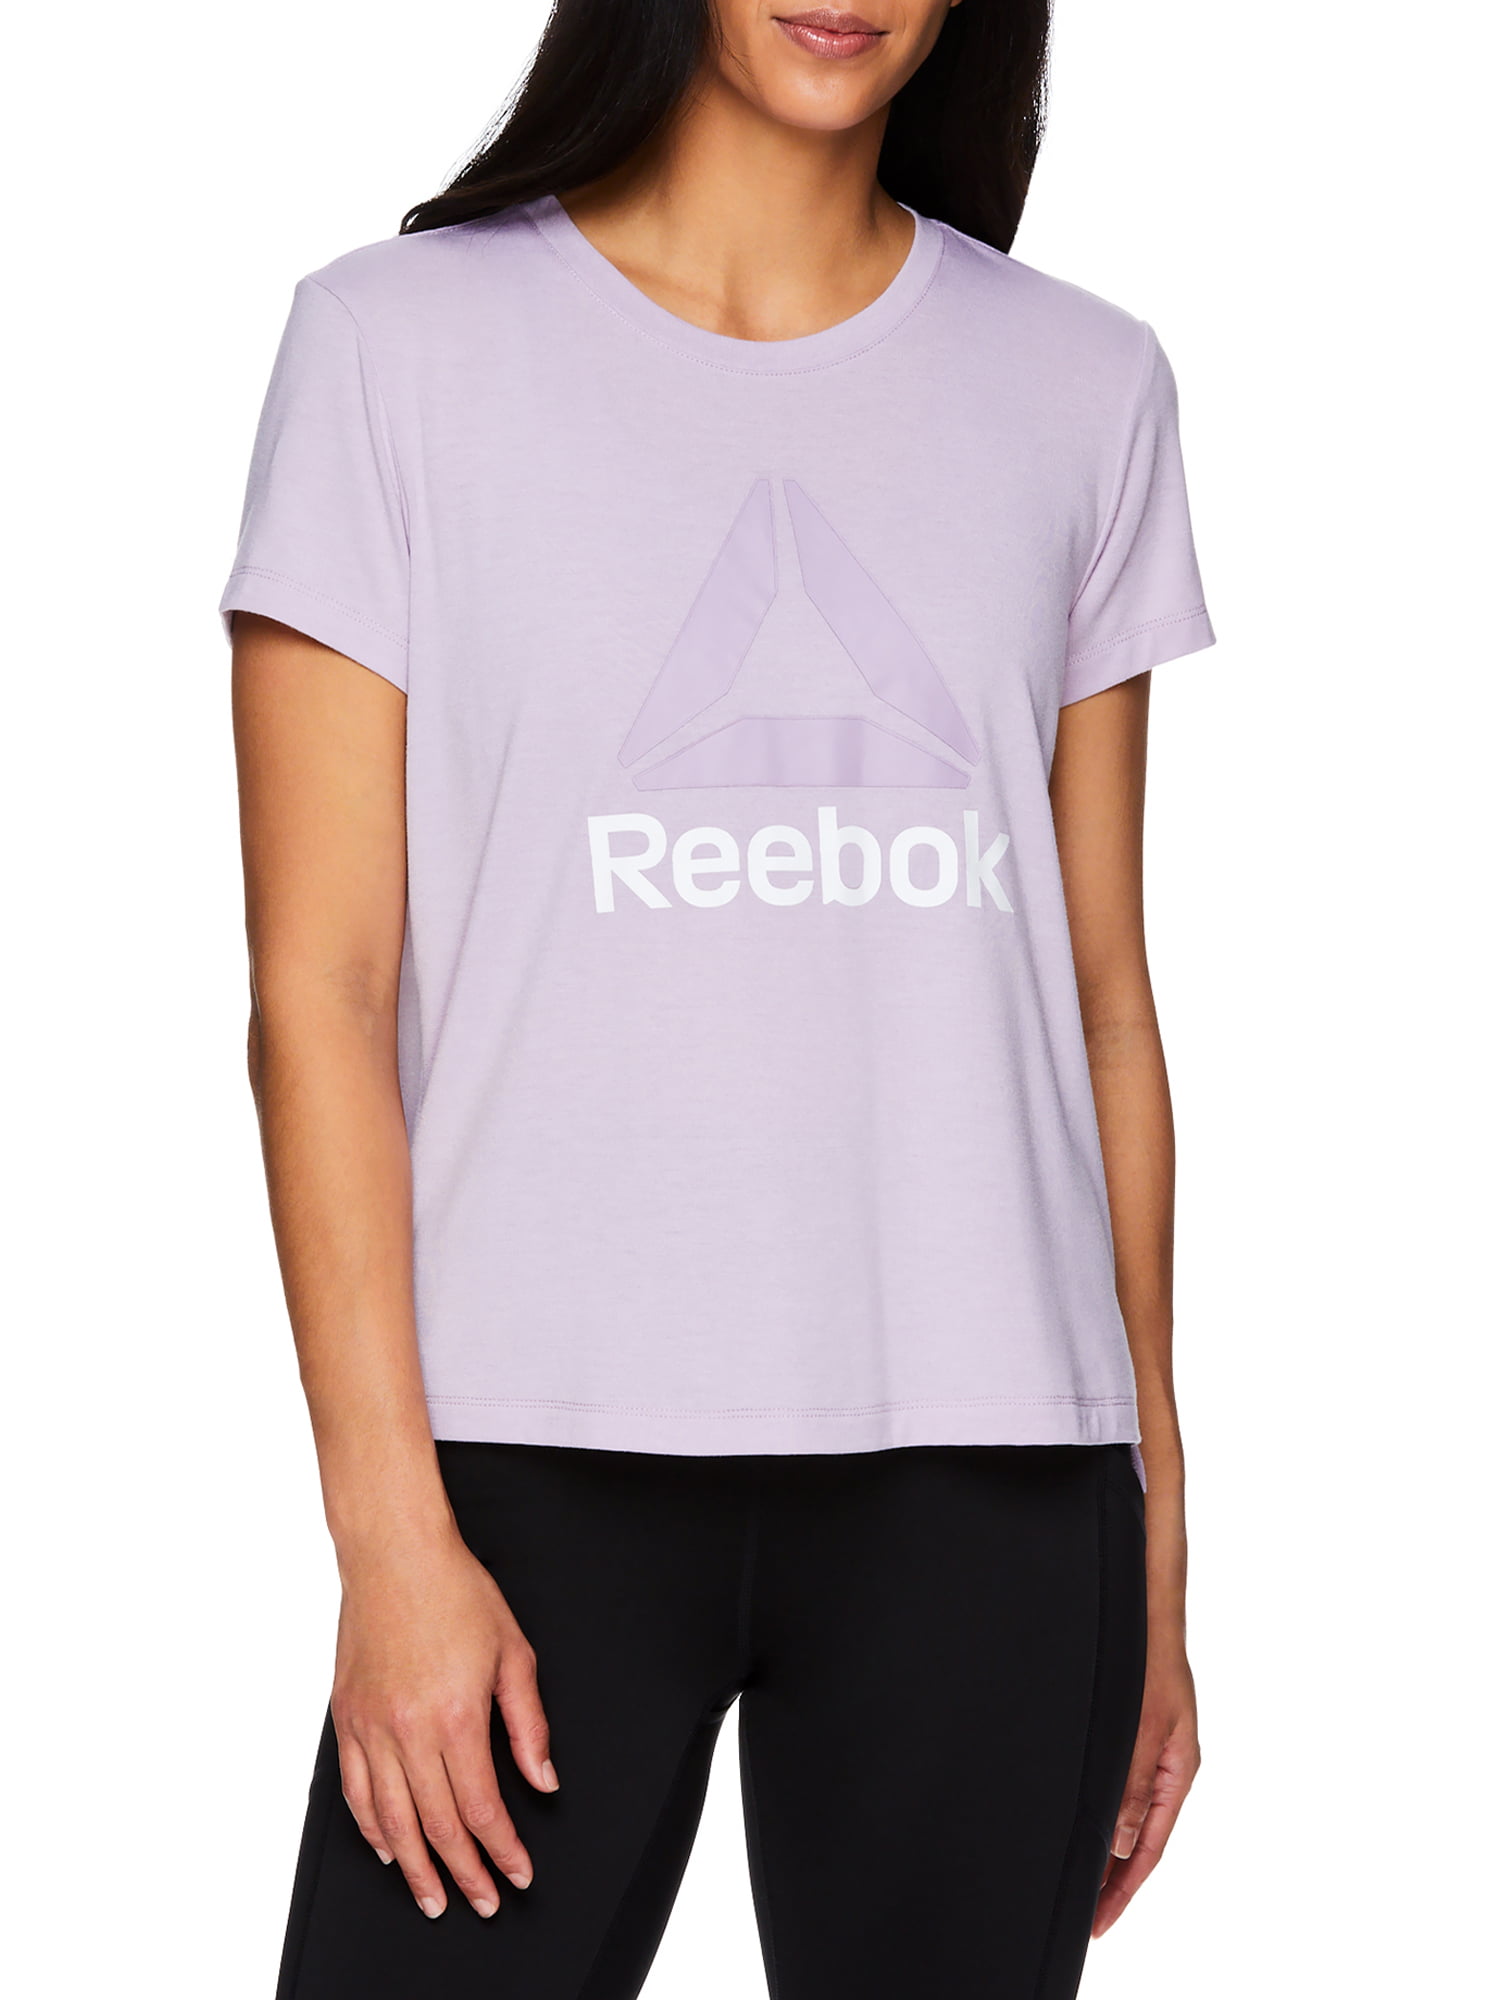 Reebok Women's Ultimate Slinky Jersey Logo Cropped Tee (Lavender Frost) $7.00 + Free S&H w/ Walmart+ or $35+